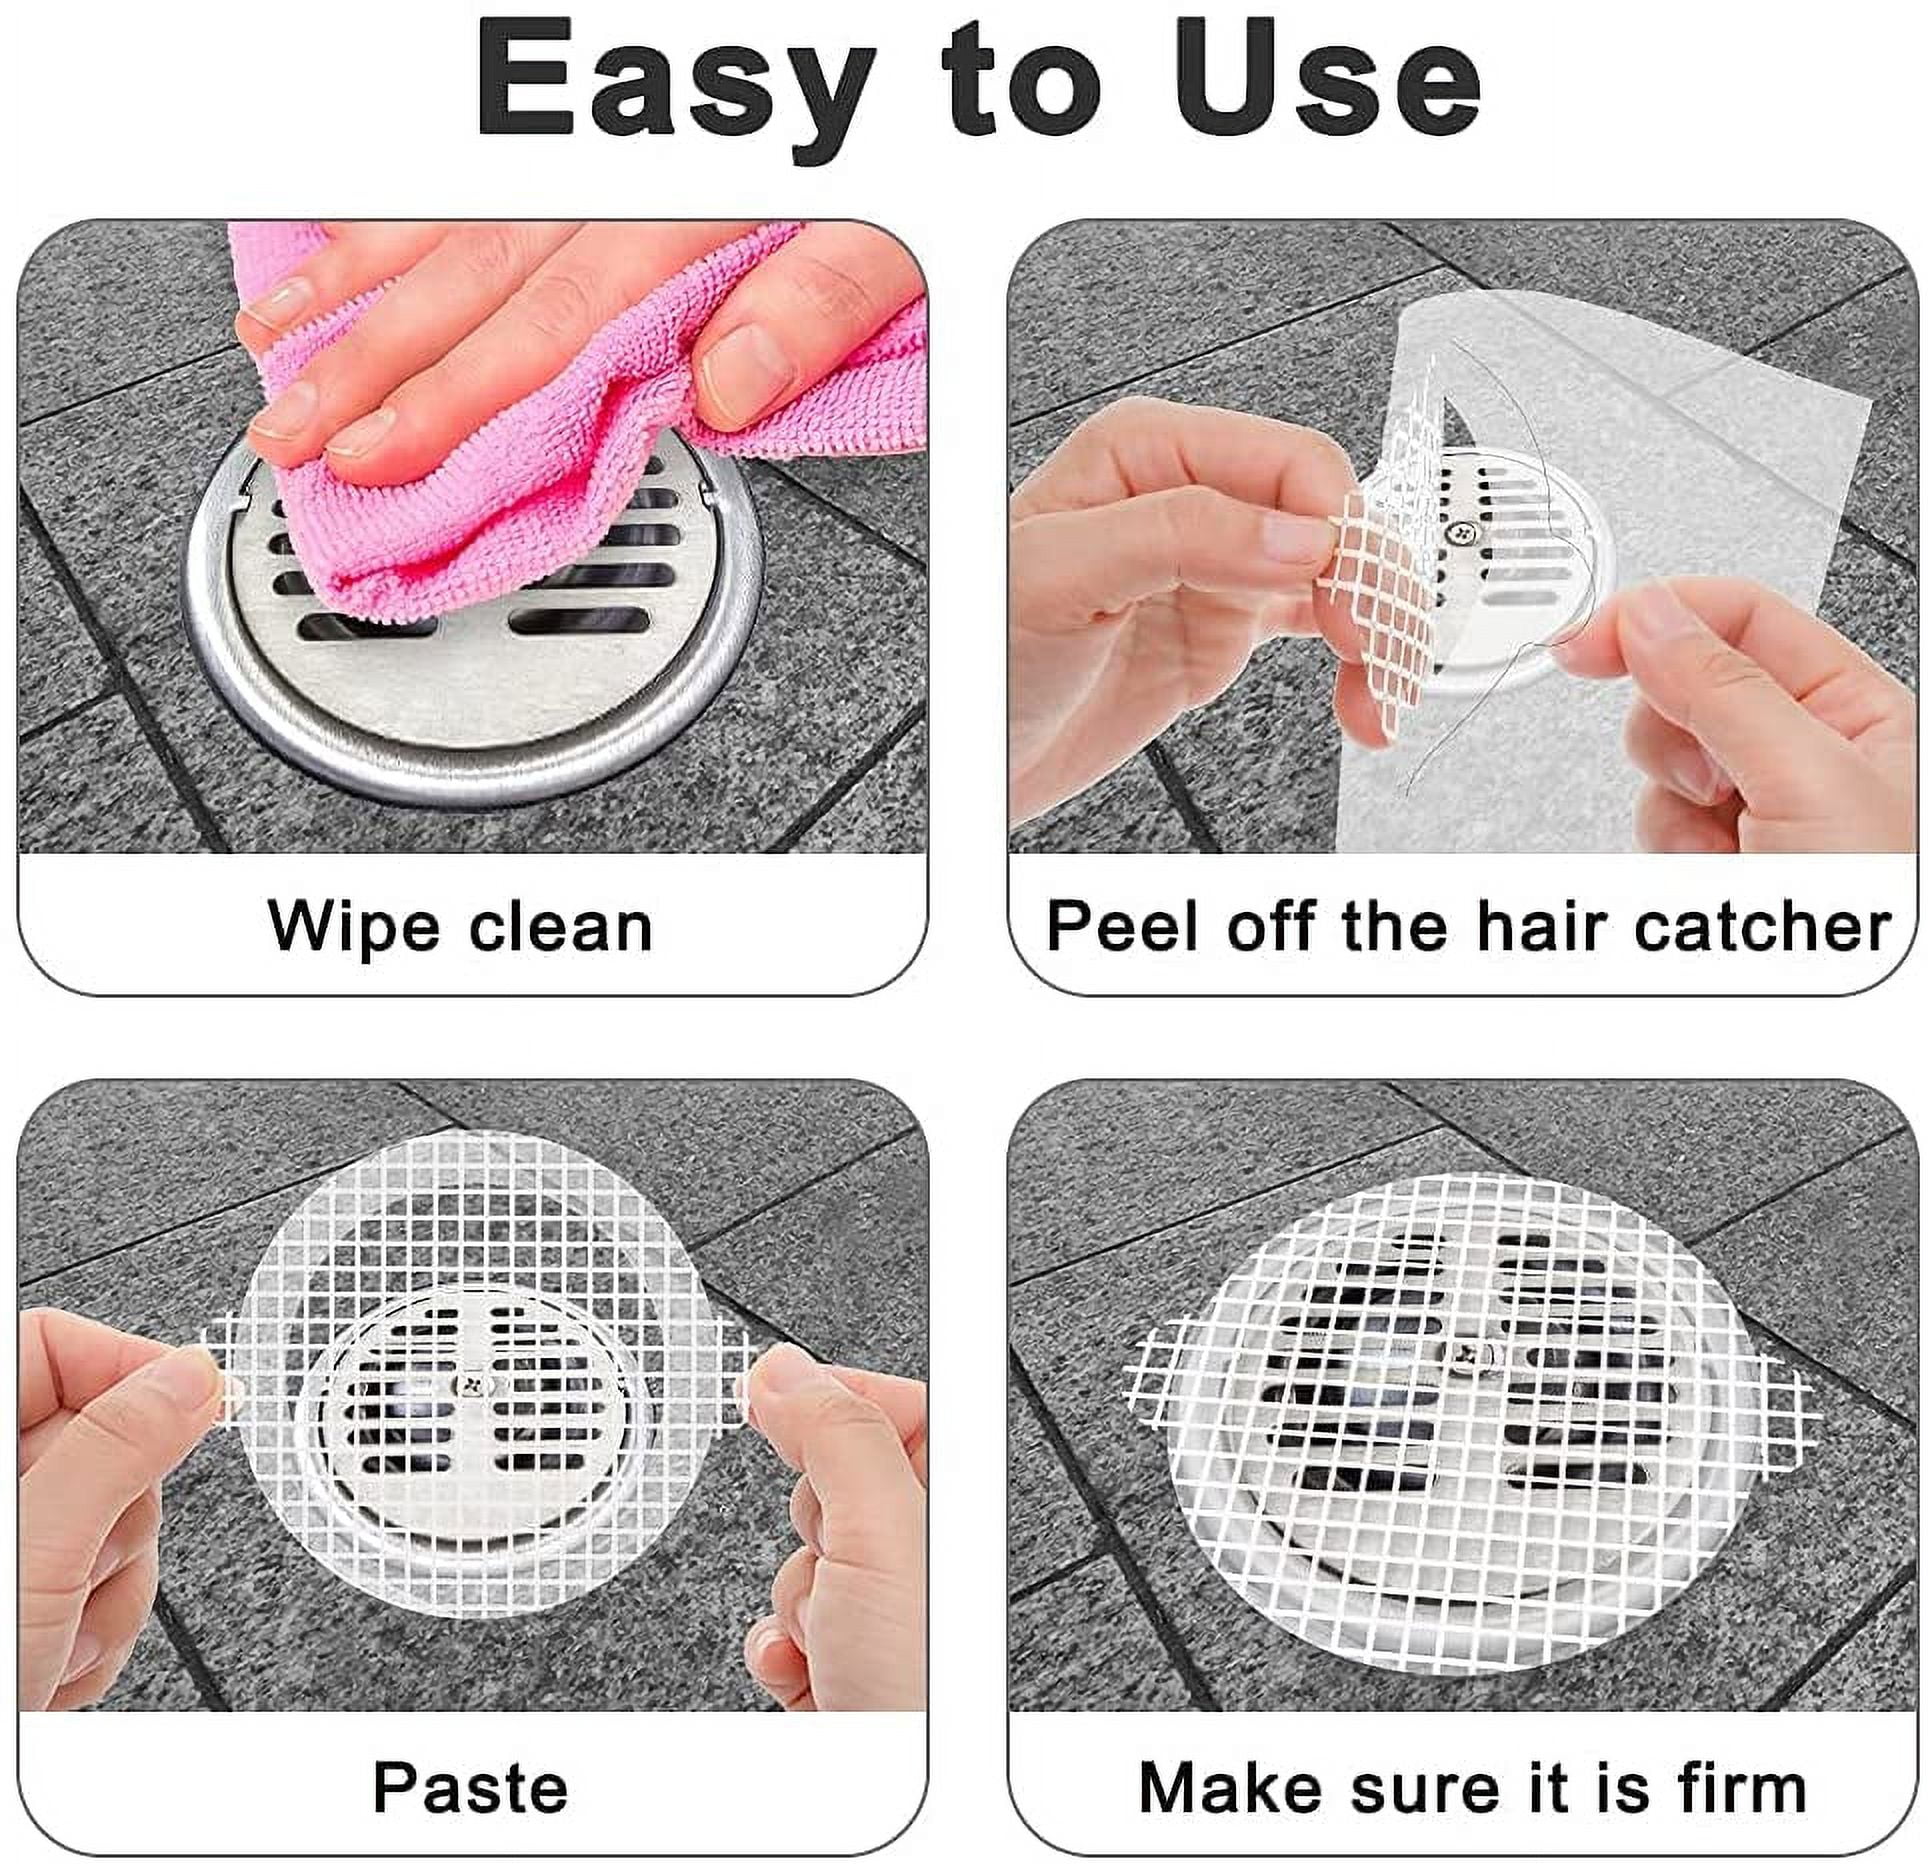 6pcs Drain Strainer Cover For Hair Stopper, Disposable Shower Drain Hair  Catcher, Disposable Hair Catchers For Shower, Floor Sink Strainer Filter  Mesh